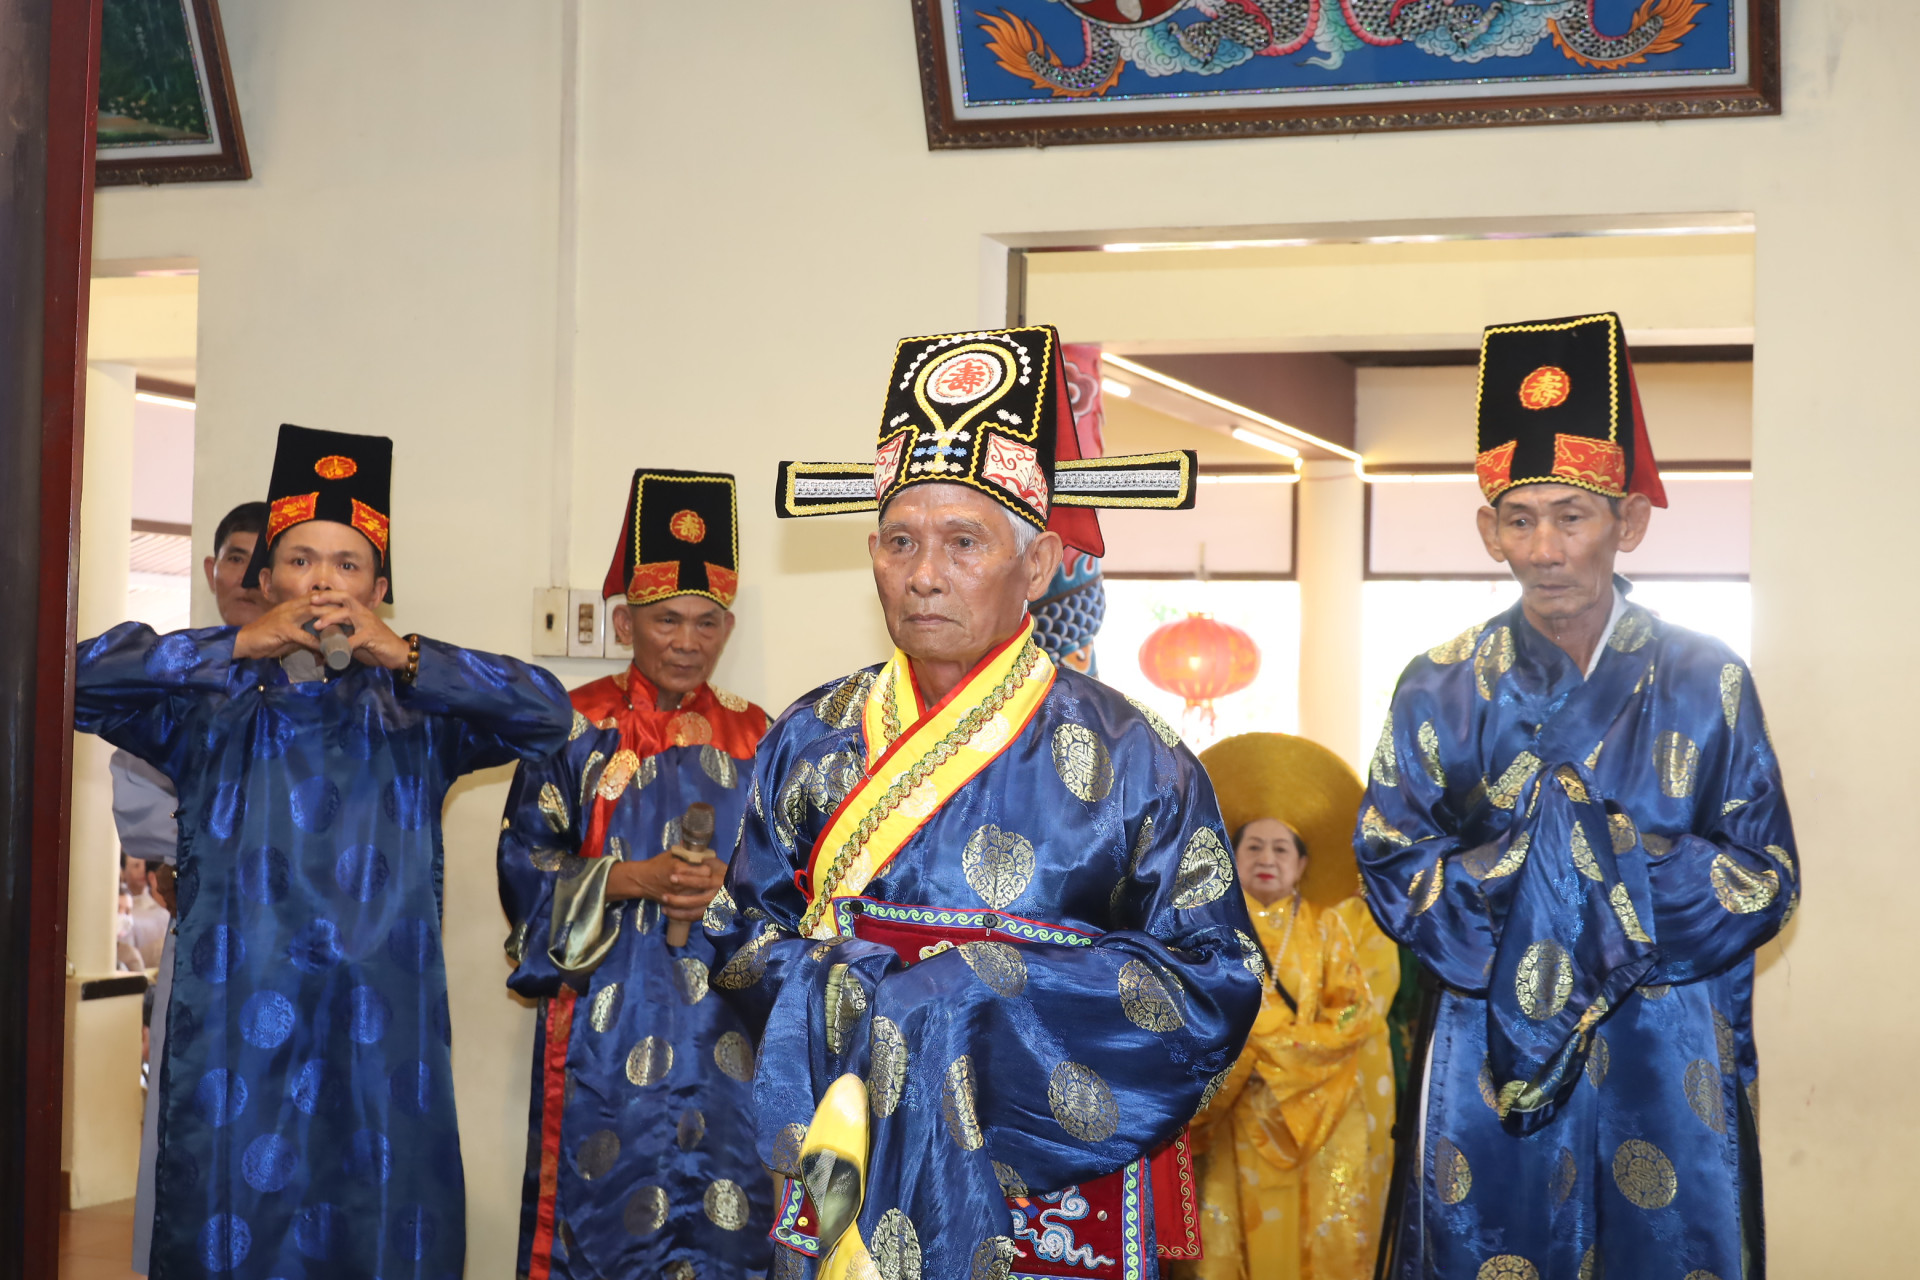 Elders of Dien Dien Commune performing traditional ritual acts

